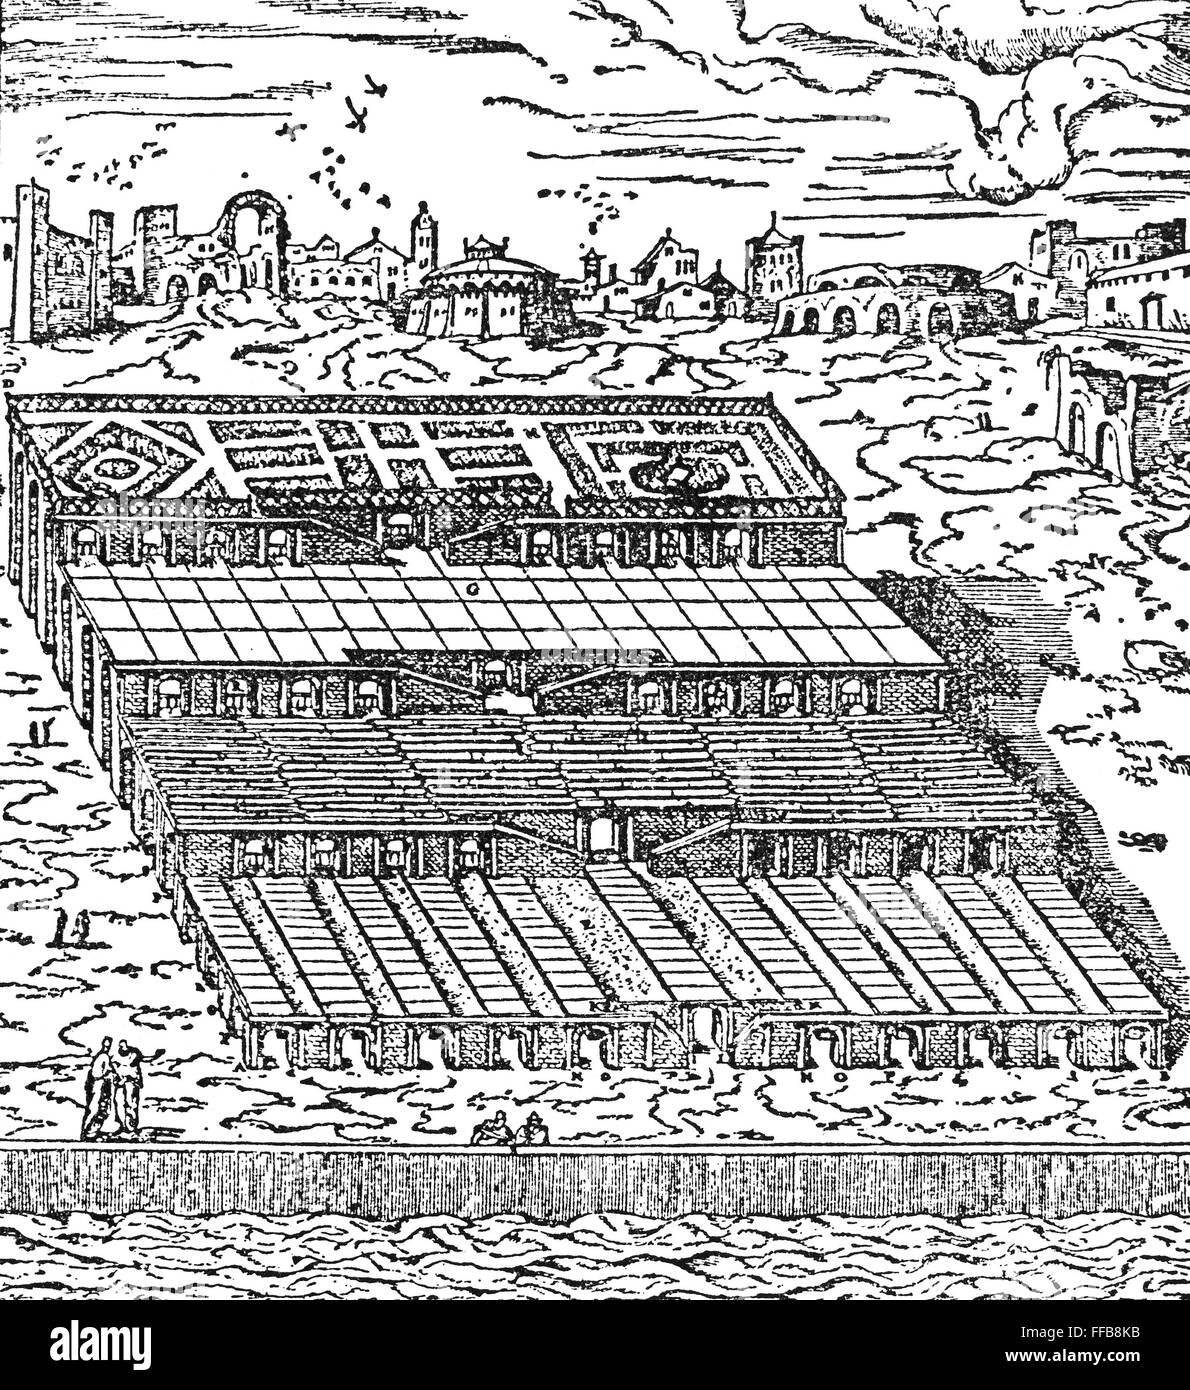 Babilonia: jardines colgantes. /Nel Jardines Colgantes de Babilonia. Reconstrucción en xilografía, 1592, a partir de la descripción por Heródoto (C480-C425 a. de C.), quien visitó Babilonia. Foto de stock